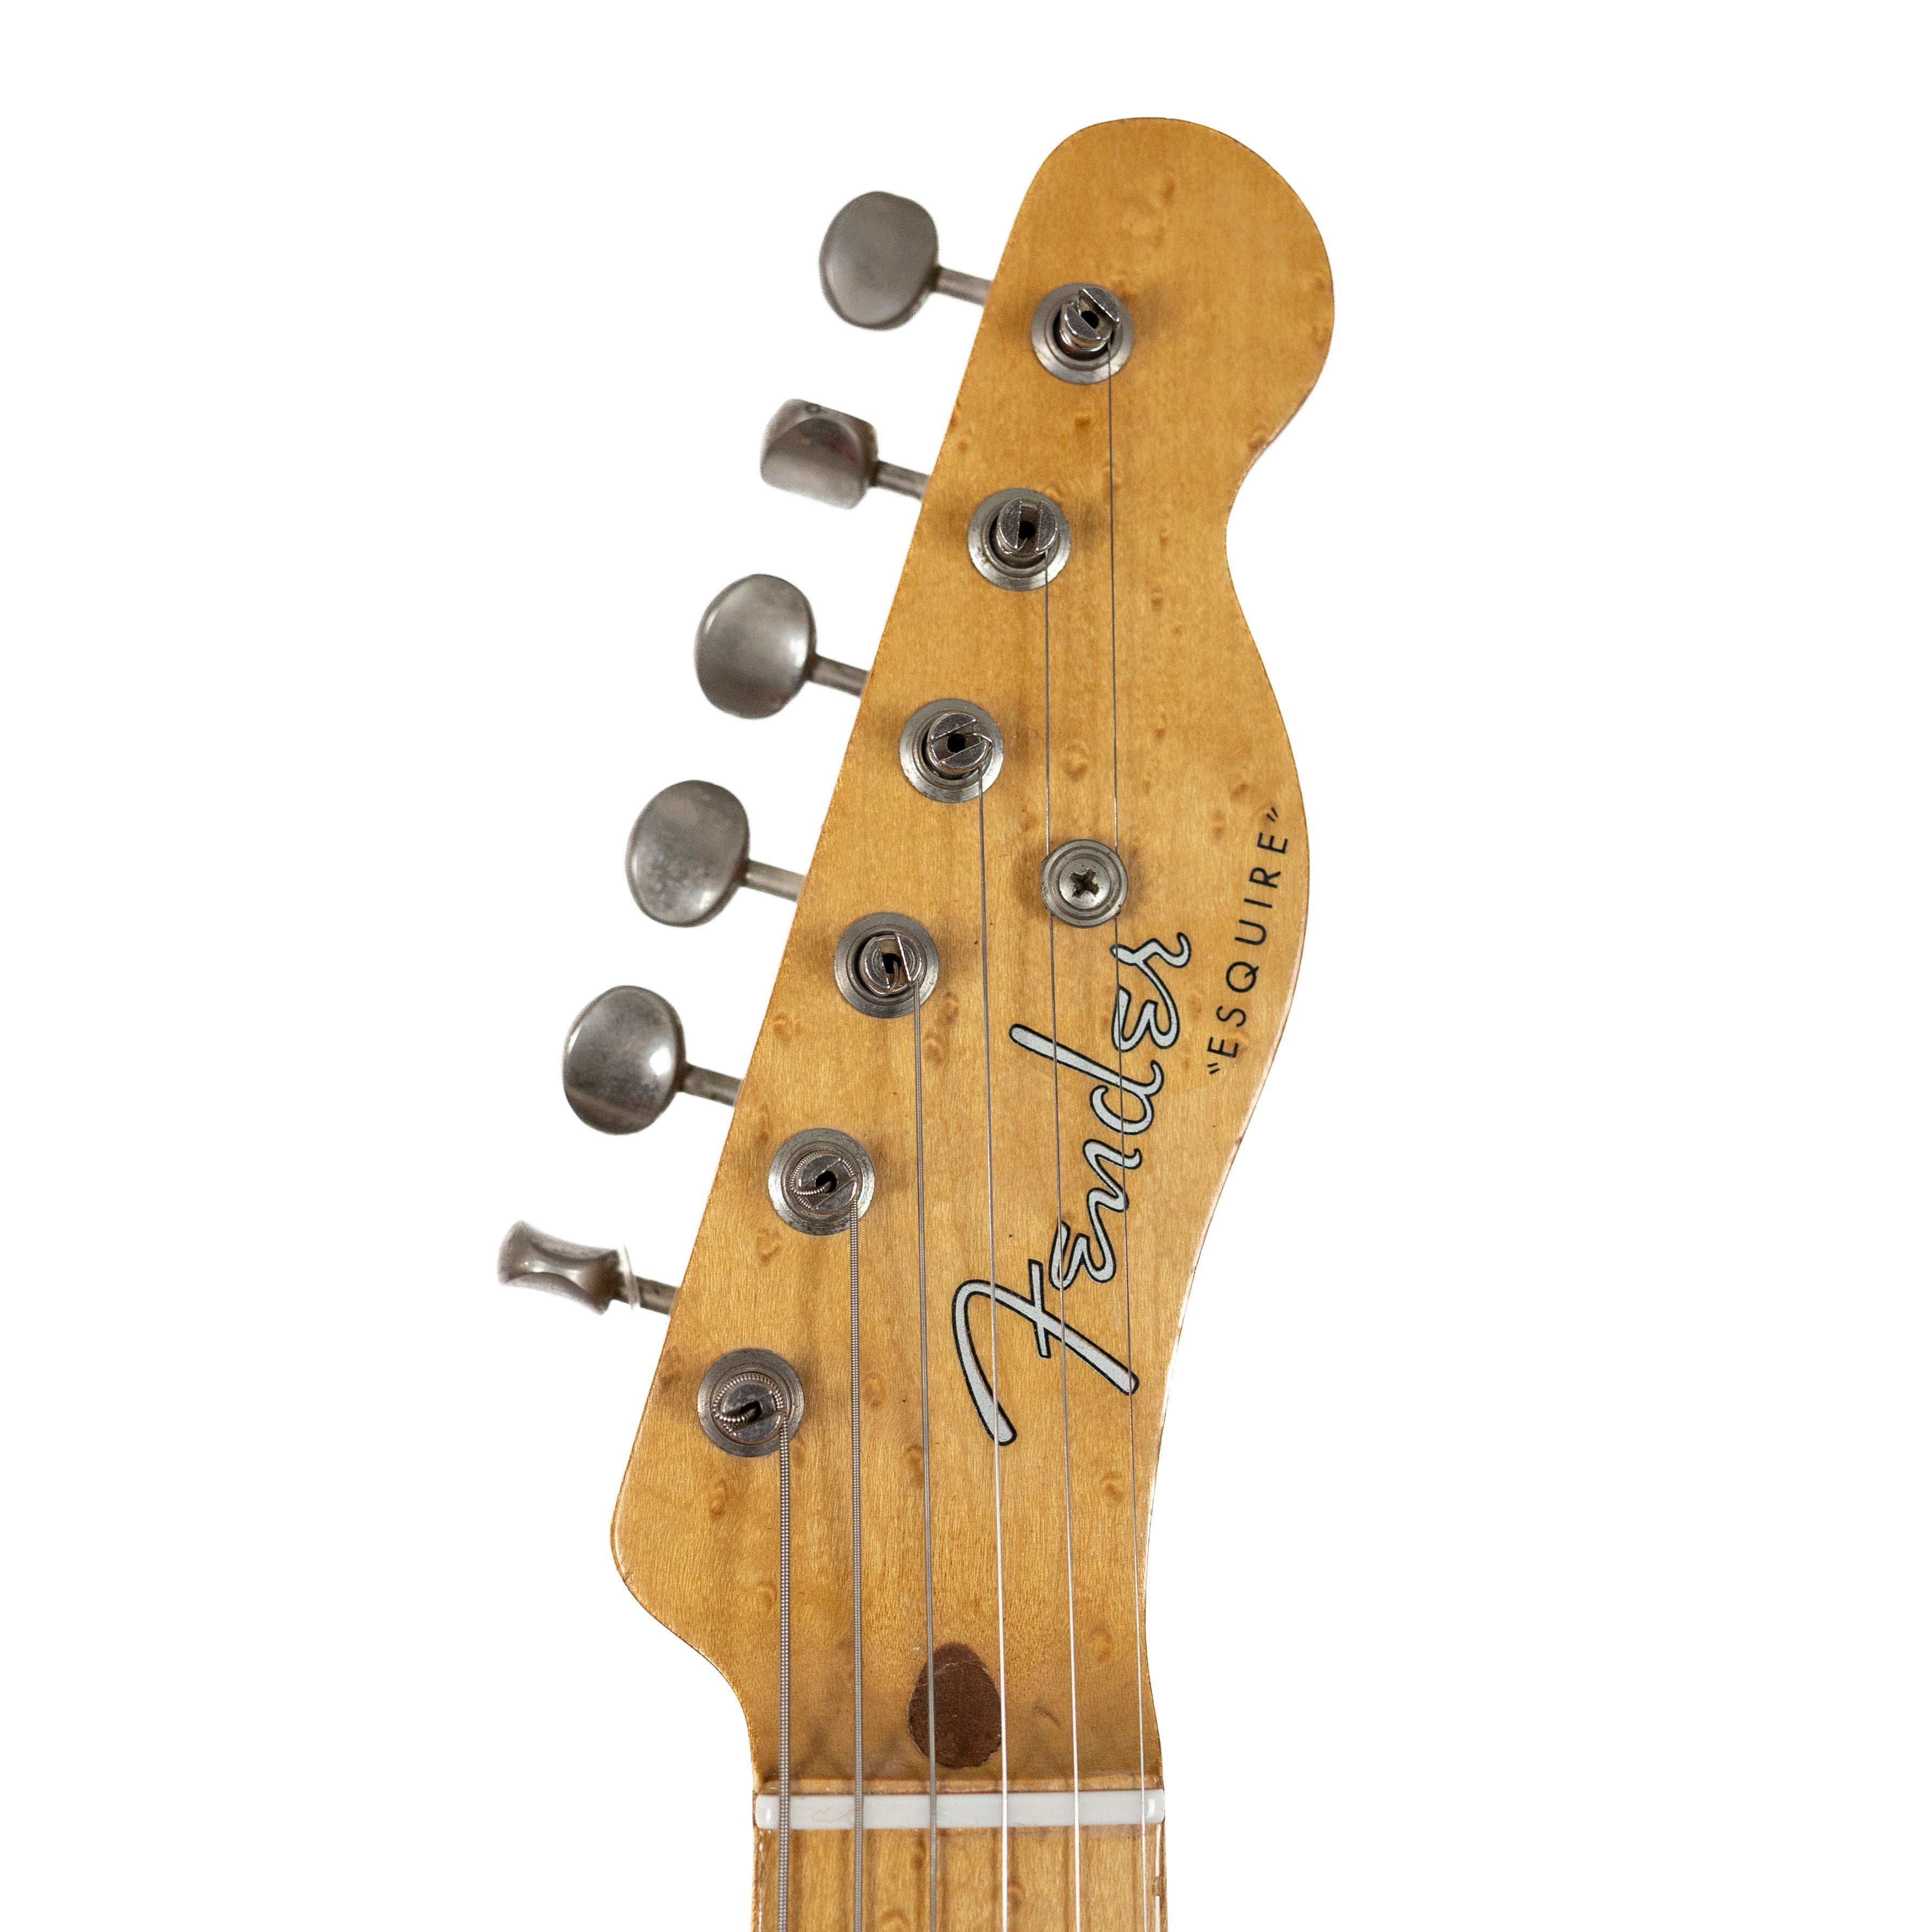 Fender 1956 Esquire Blonde